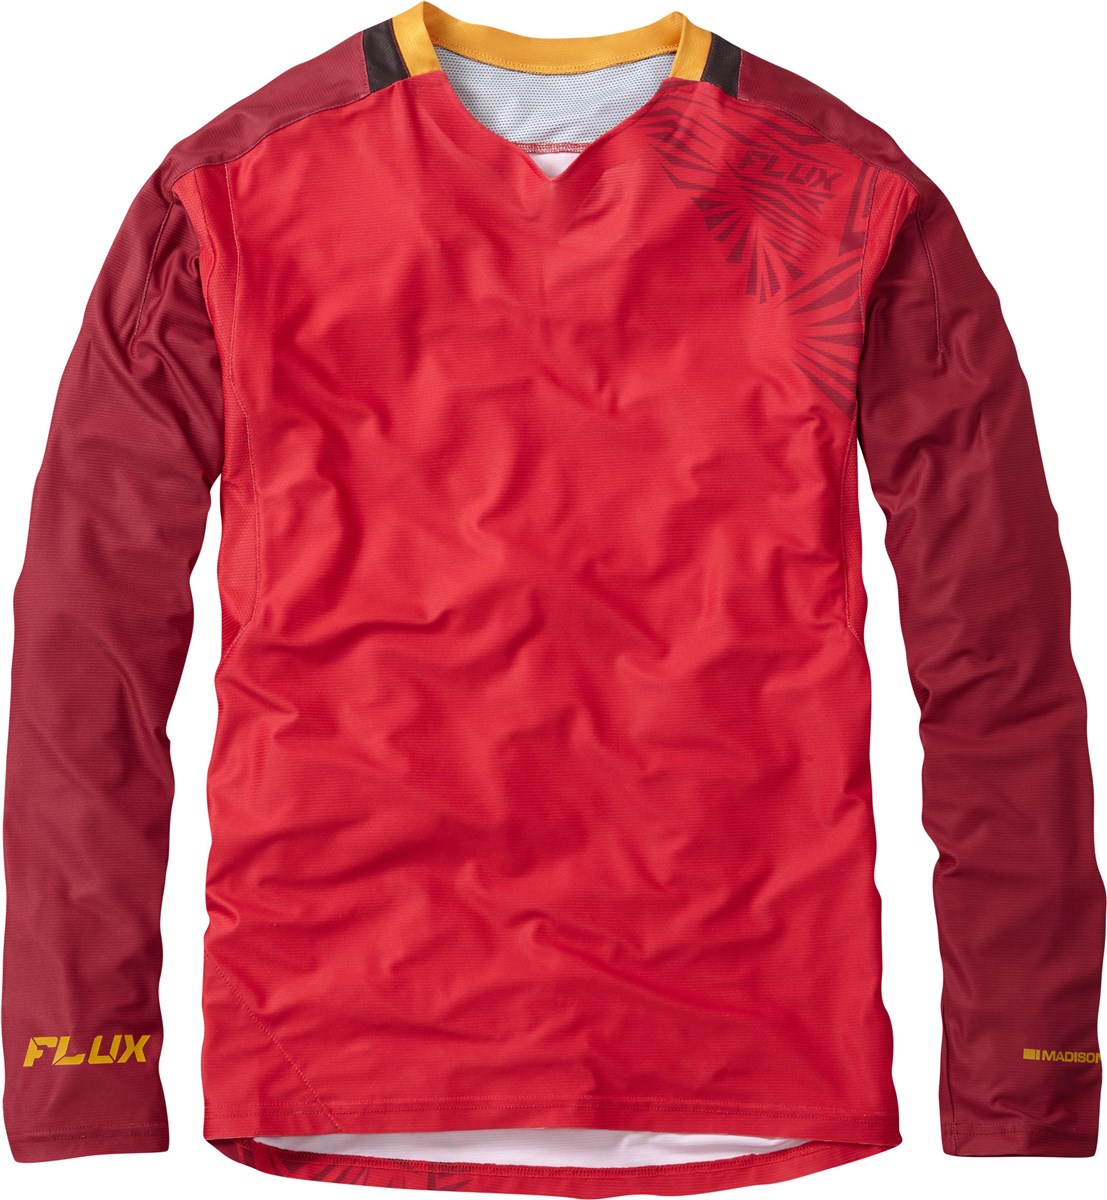 Madison Flux Enduro Long Sleeve Jersey product image